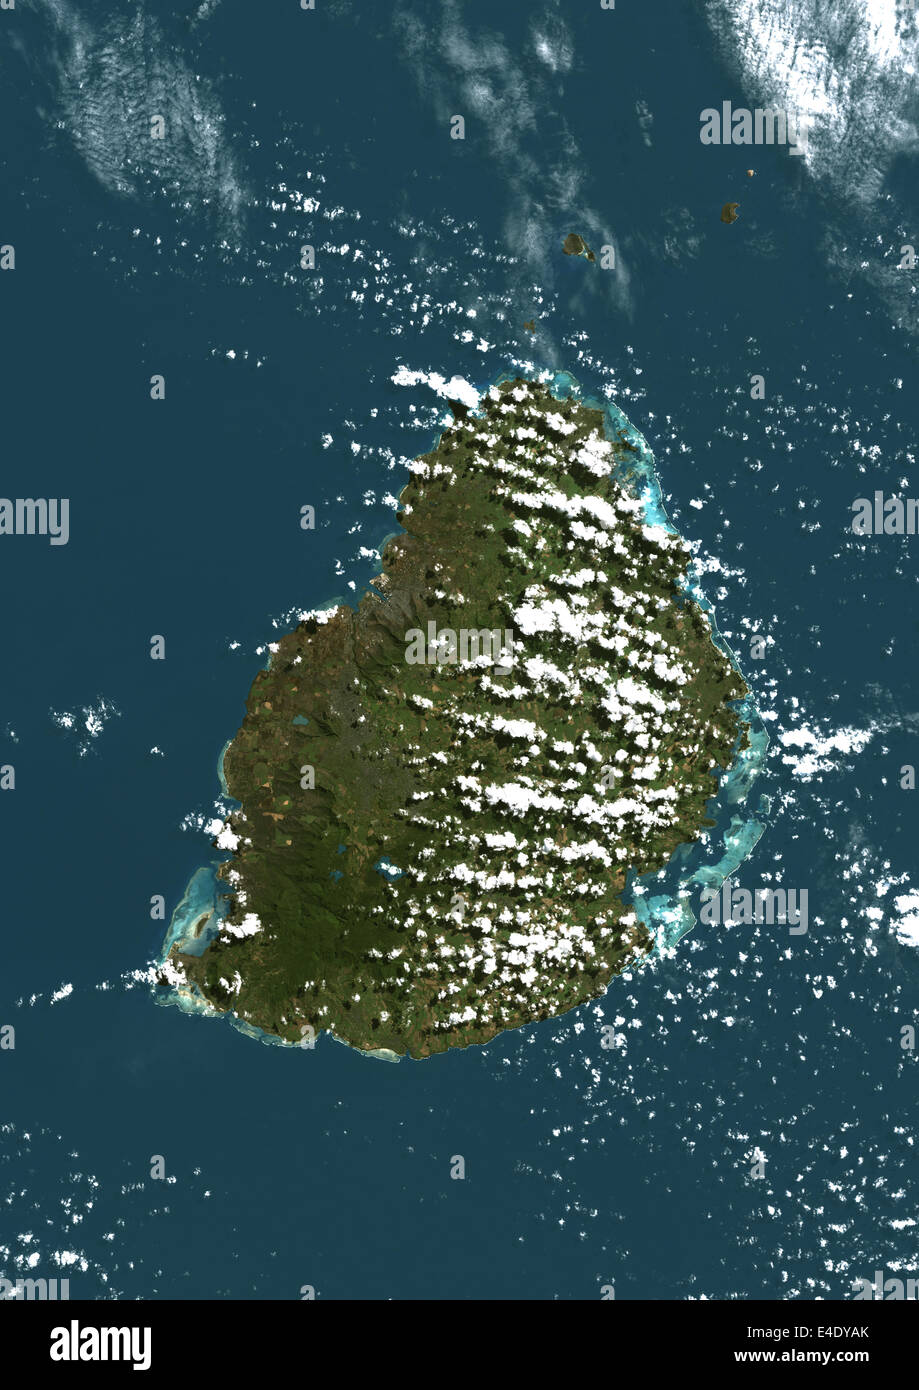 Mauritius, Echtfarben-Satellitenbild. Mauritius, Echtfarben-Satellitenbild, aufgenommen am 19. August 1999, von LANDSAT 7 satell Stockfoto